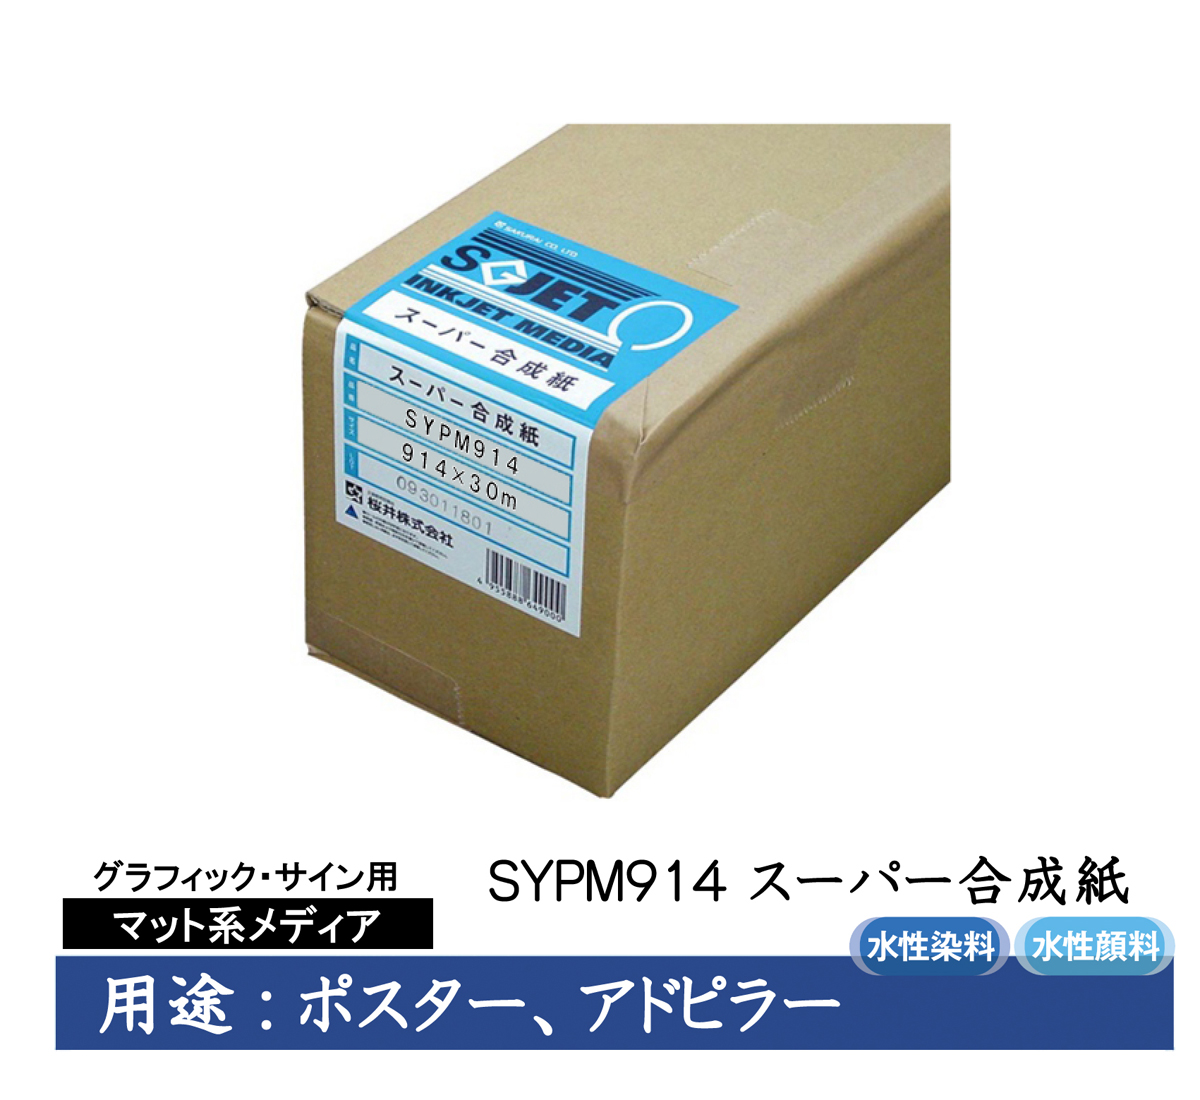 桜井 スーパー合成紙 50インチロール1270mm×50m 3インチコア SYPM1270